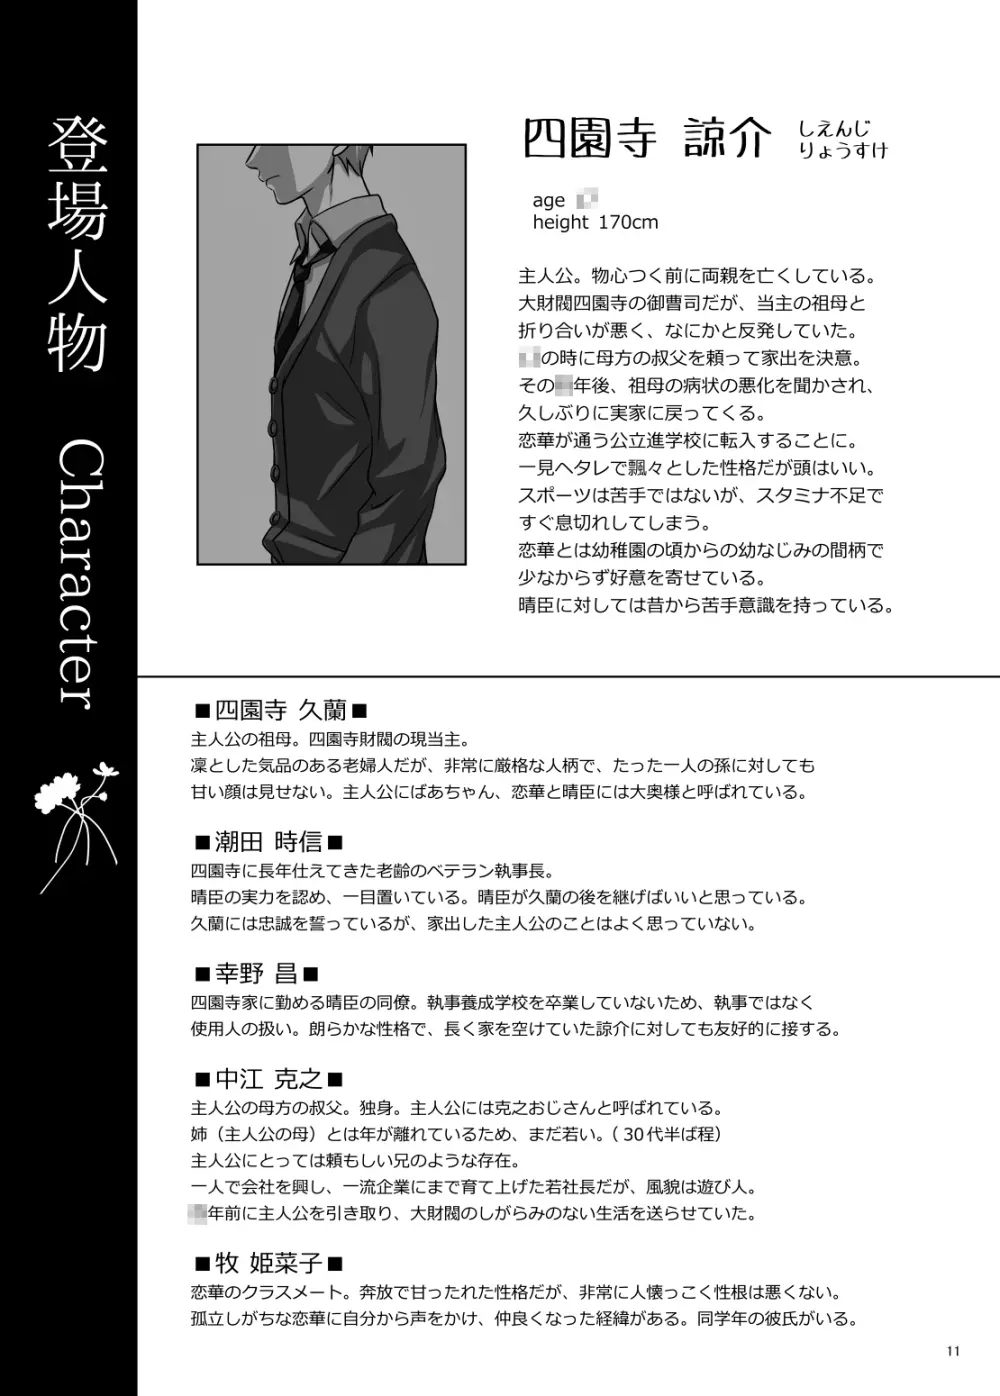 恋ノ歌 Preview Book 11ページ